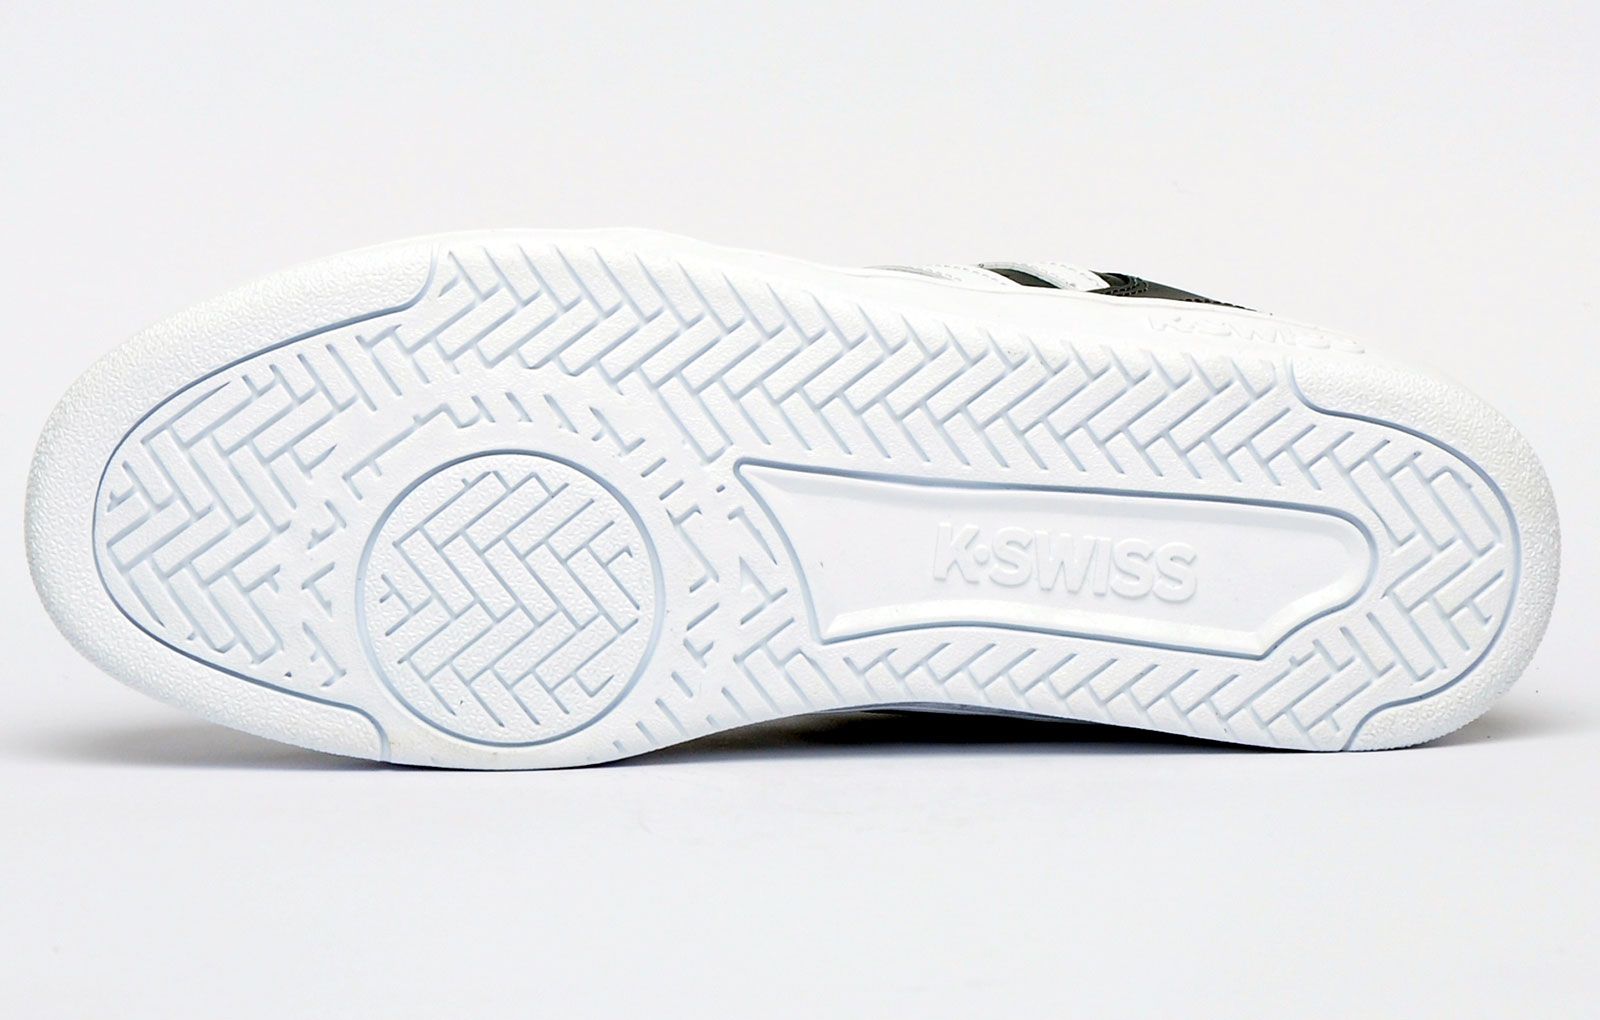 De Adidas 3MC-trainer combineert eeuwige stijl met totaal comfort en skateprestaties.